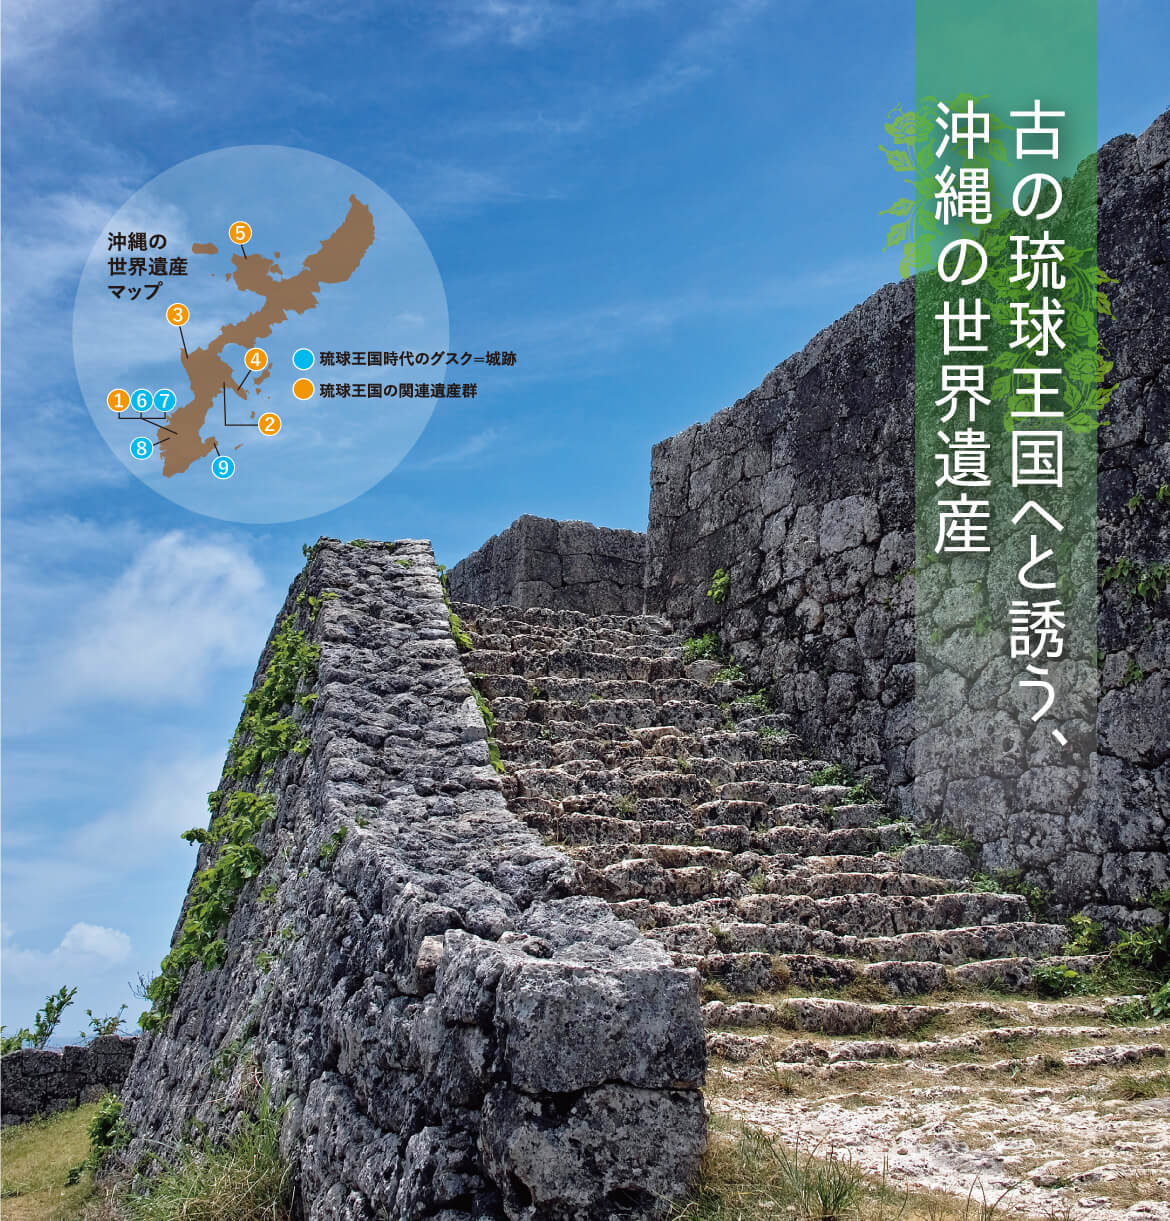 沖縄の世界遺産・勝連城跡